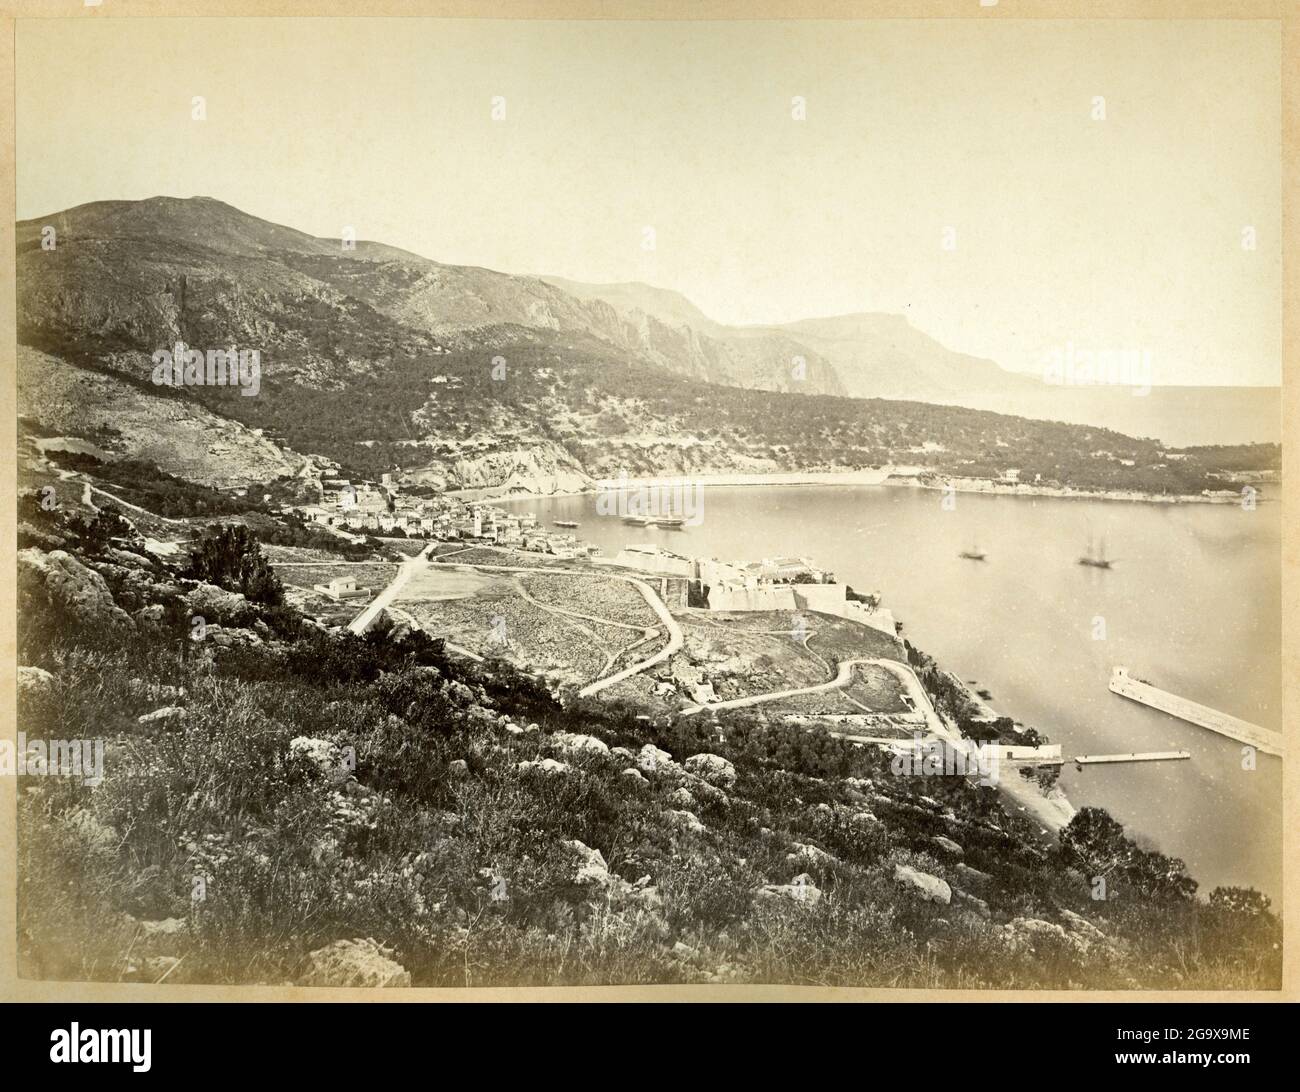 1900, Fotograf mir nicht bekannt Europe, Frankreich, Nizza, Blick auf den hinteren Teil des Hafens von Nizza ?, ZUSÄTZLICHE-RIGHTS-CLEARANCE-INFO-NOT-AVAILABLE Stockfoto